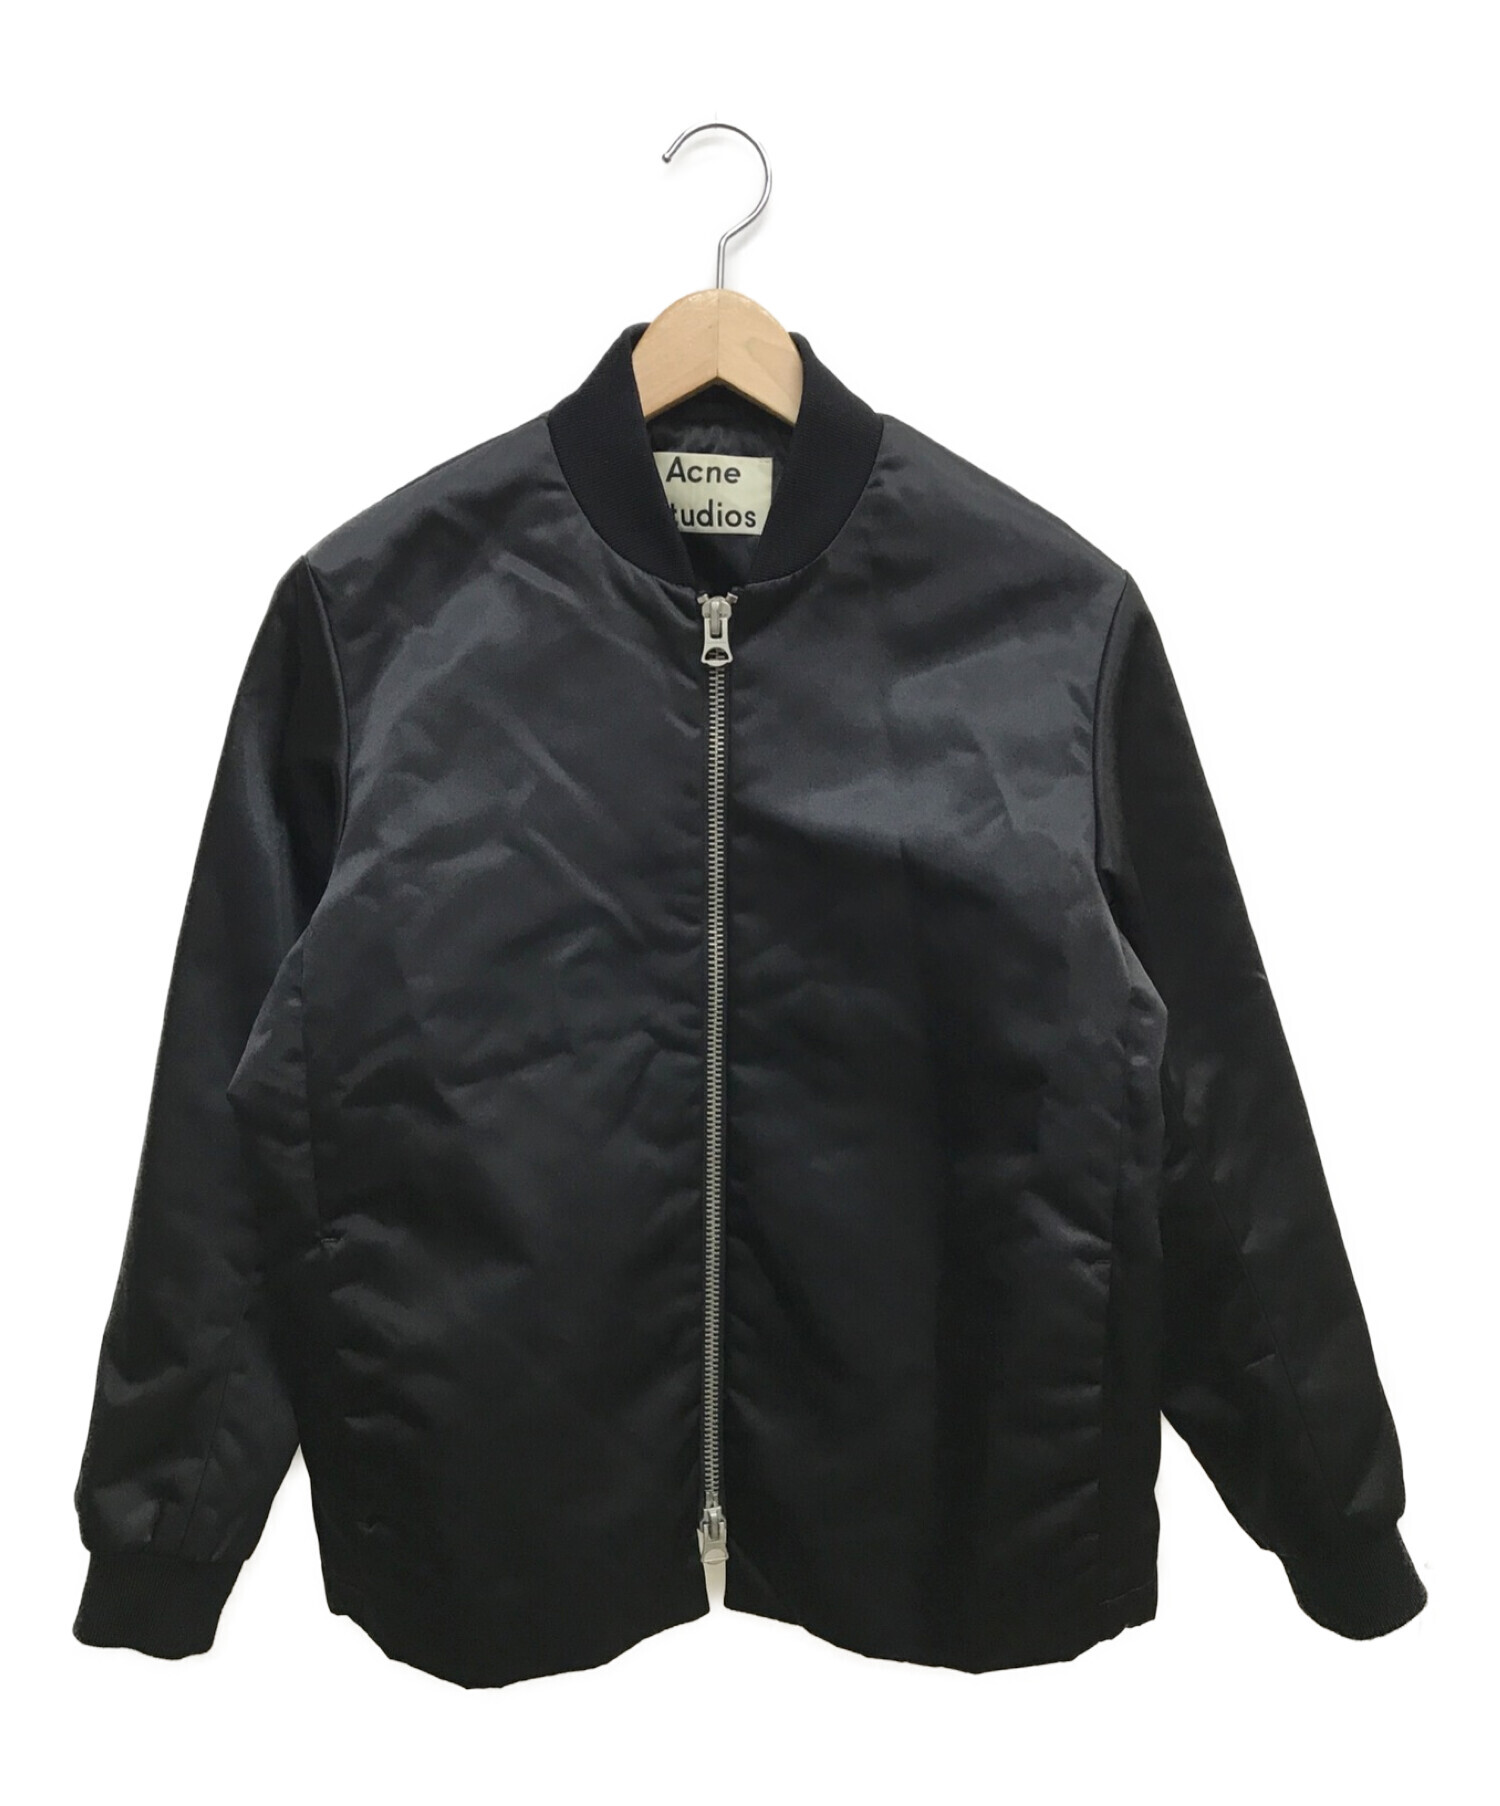 Acne studios (アクネストゥディオズ) MA-1ジャケット ブラック サイズ:34